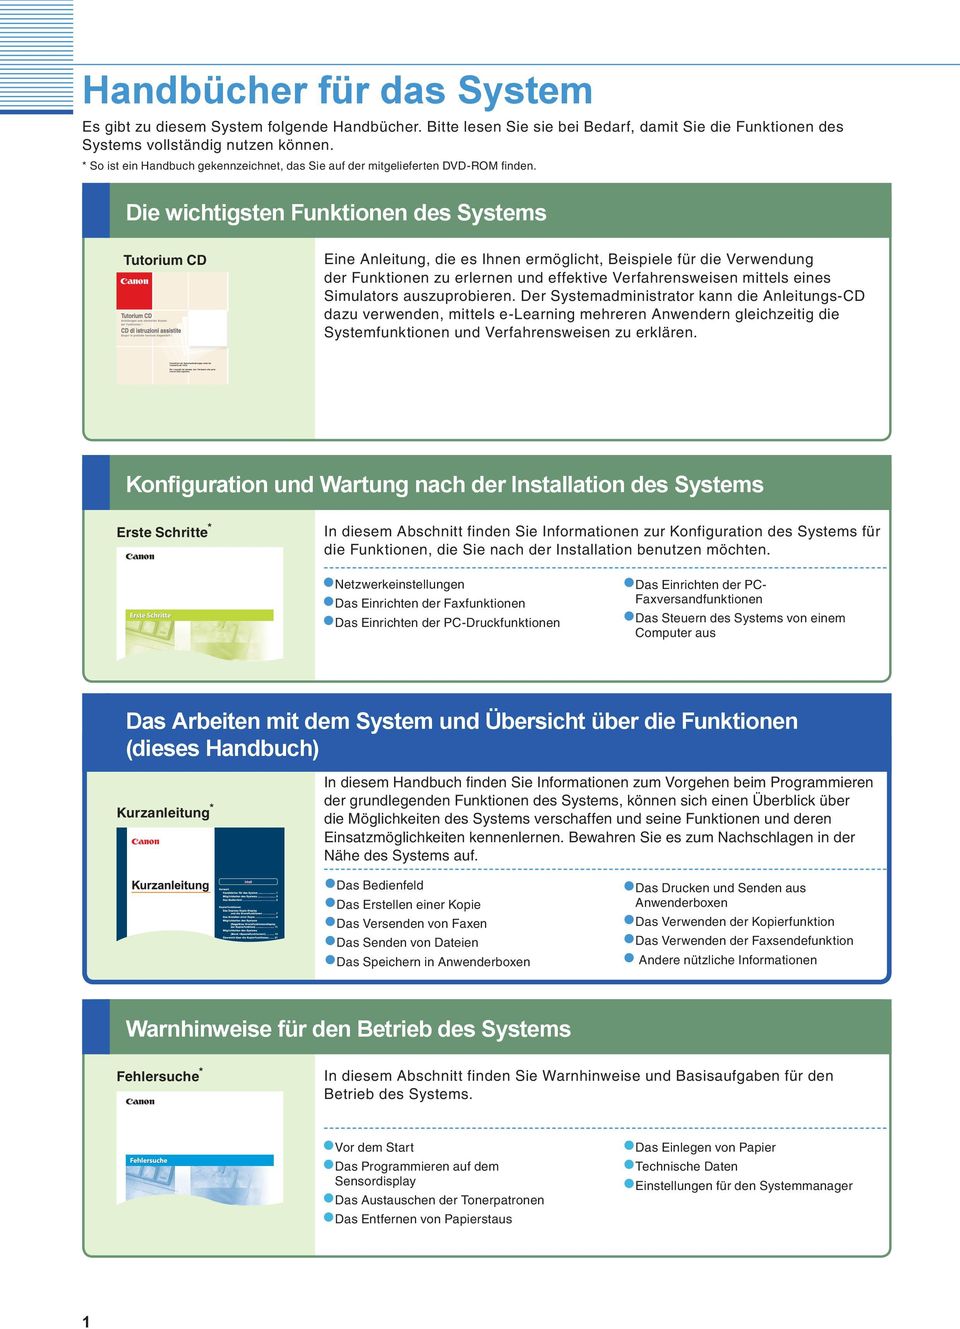 Die wichtigsten Funktionen des Systems Tutorium CD Eine Anleitung, die es Ihnen ermöglicht, Beispiele für die Verwendung der Funktionen zu erlernen und effektive Verfahrensweisen mittels eines